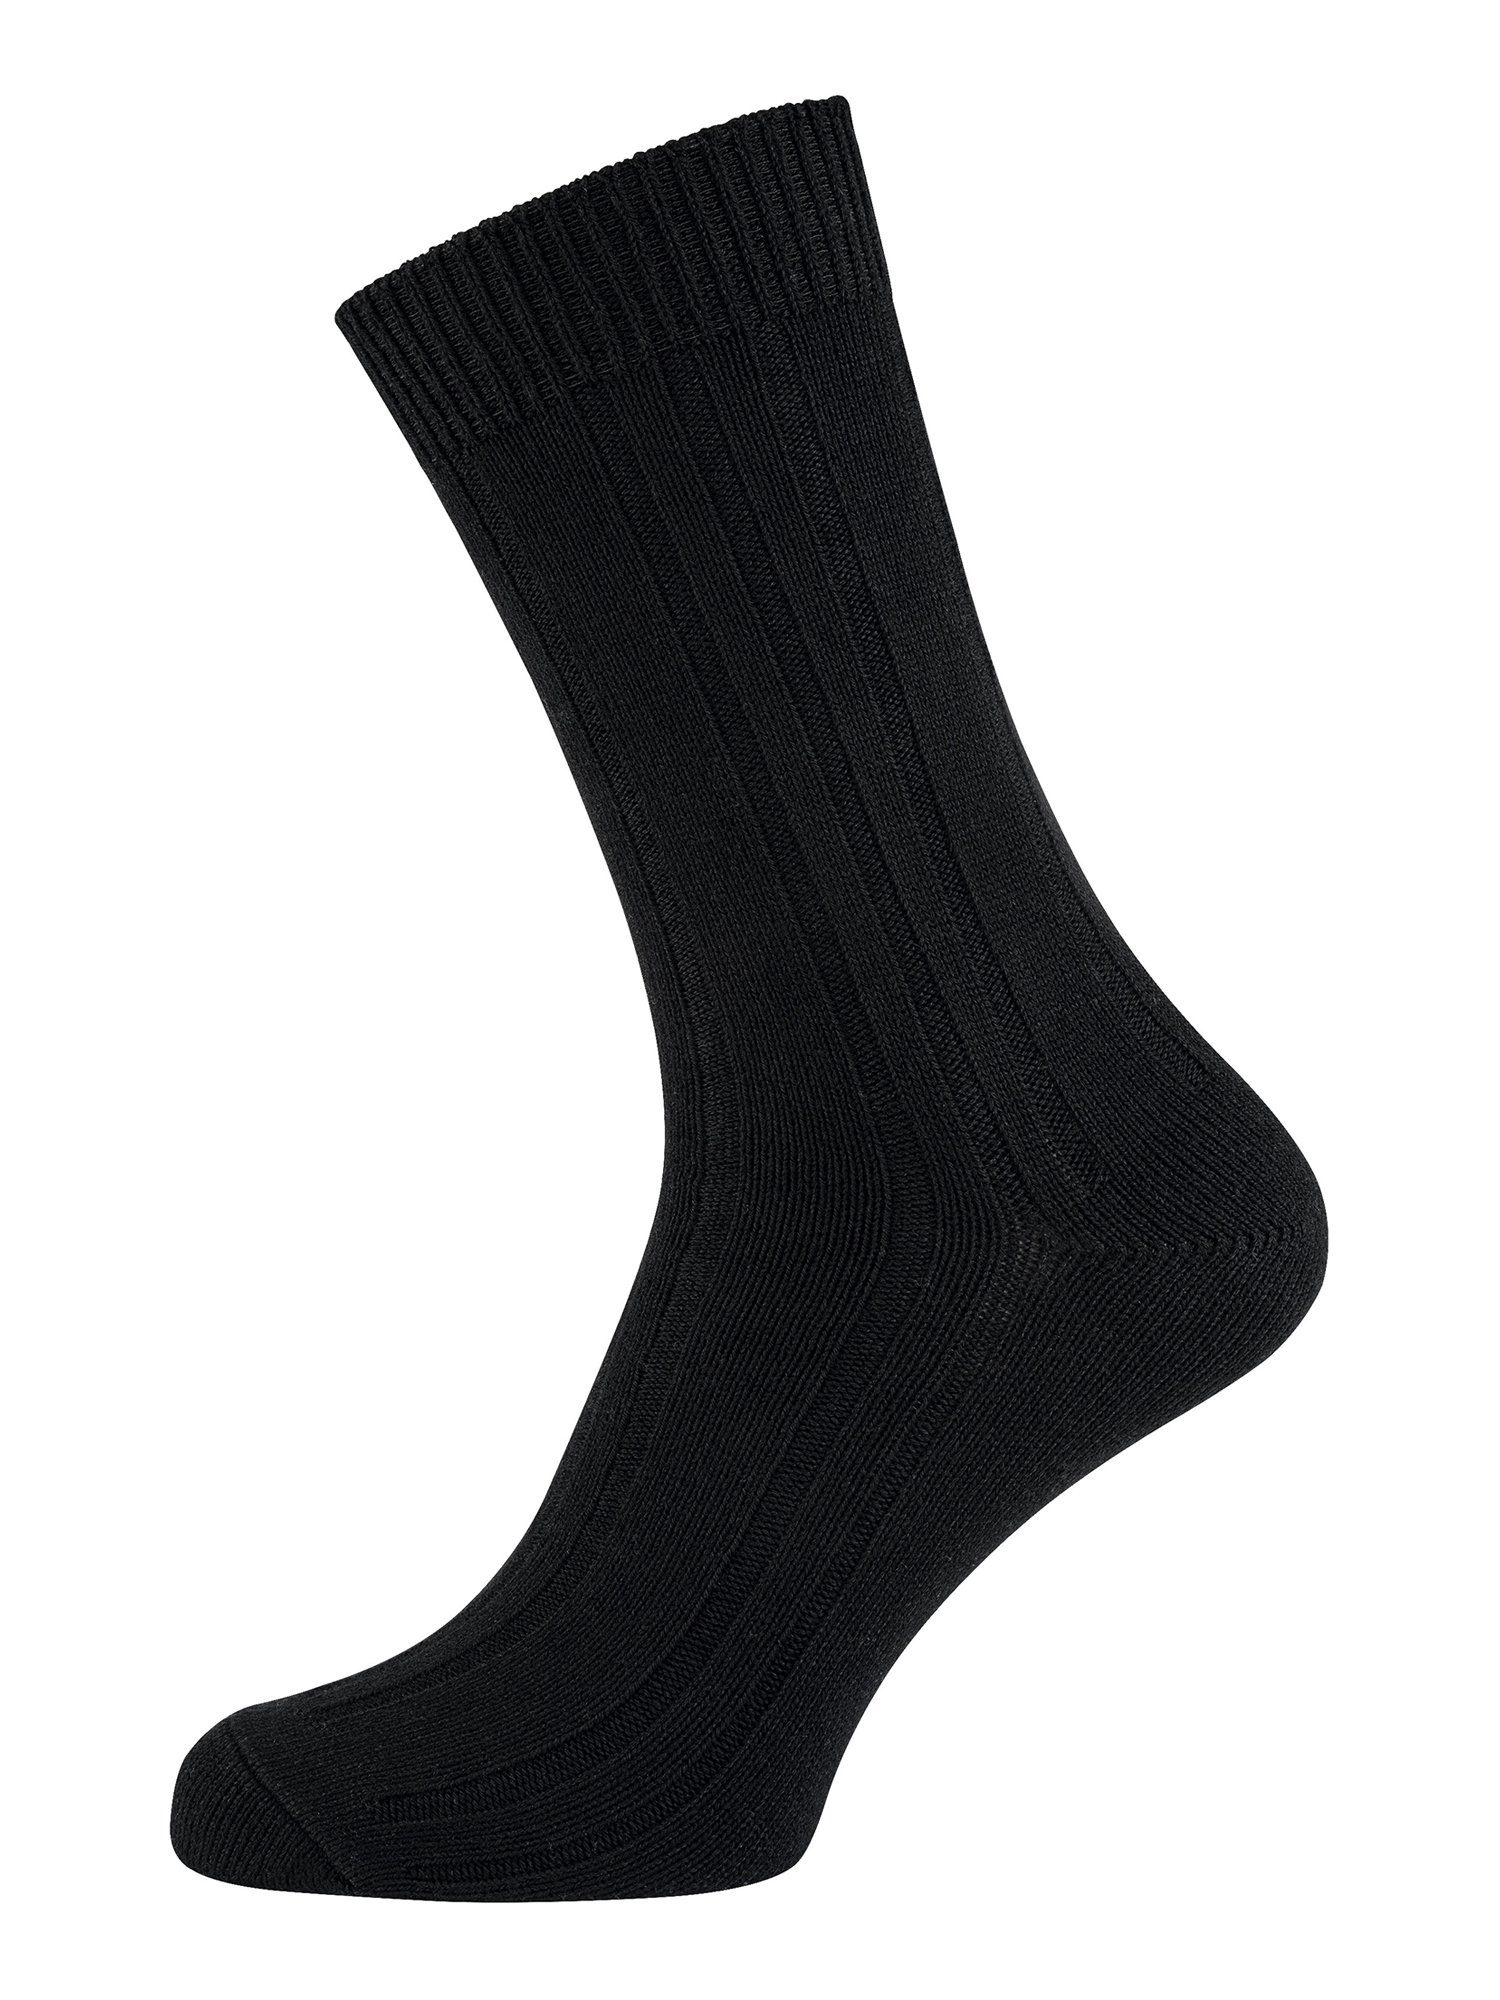 Socken schwarz Socke günstig Basicsocken Der Nur uni Warme (7-Paar)